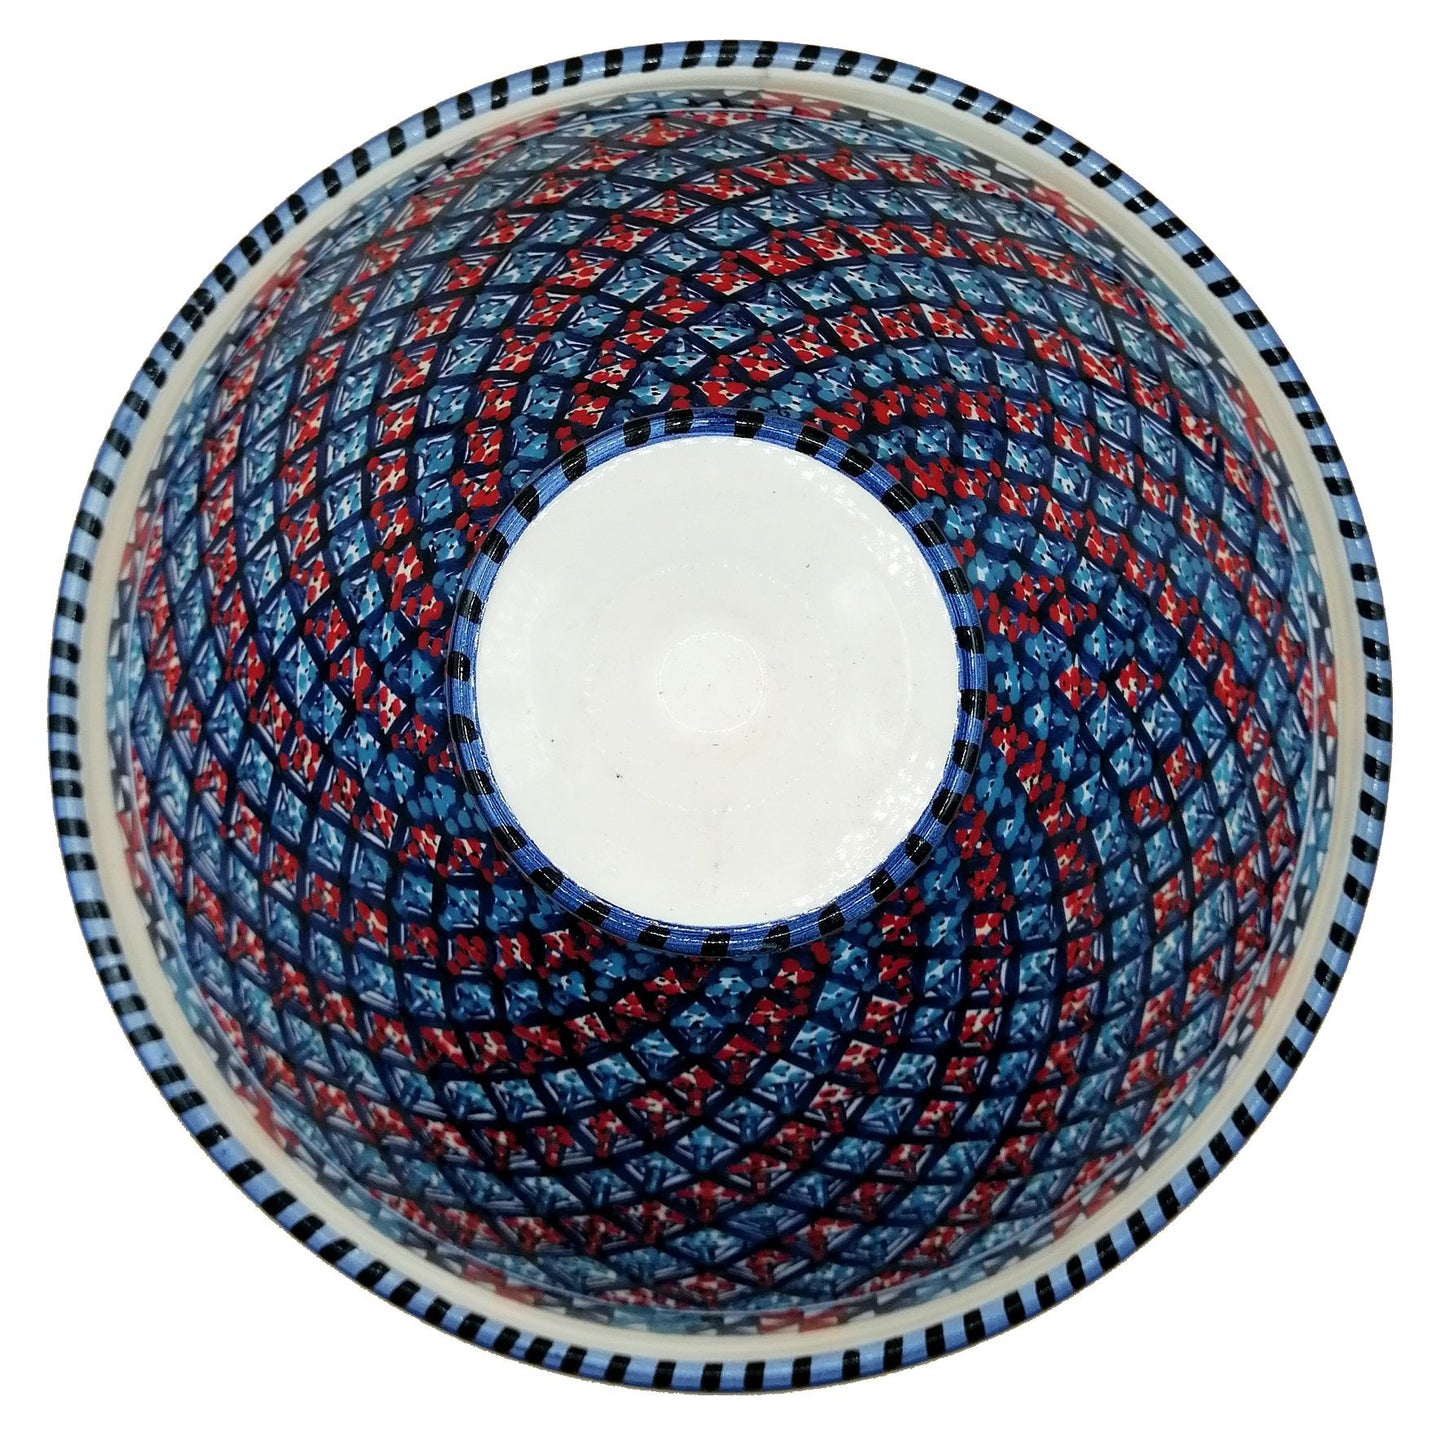 Arredo Etnico Tajine Decorativa Ceramica Marocchina Tunisina 32cm 0311200907